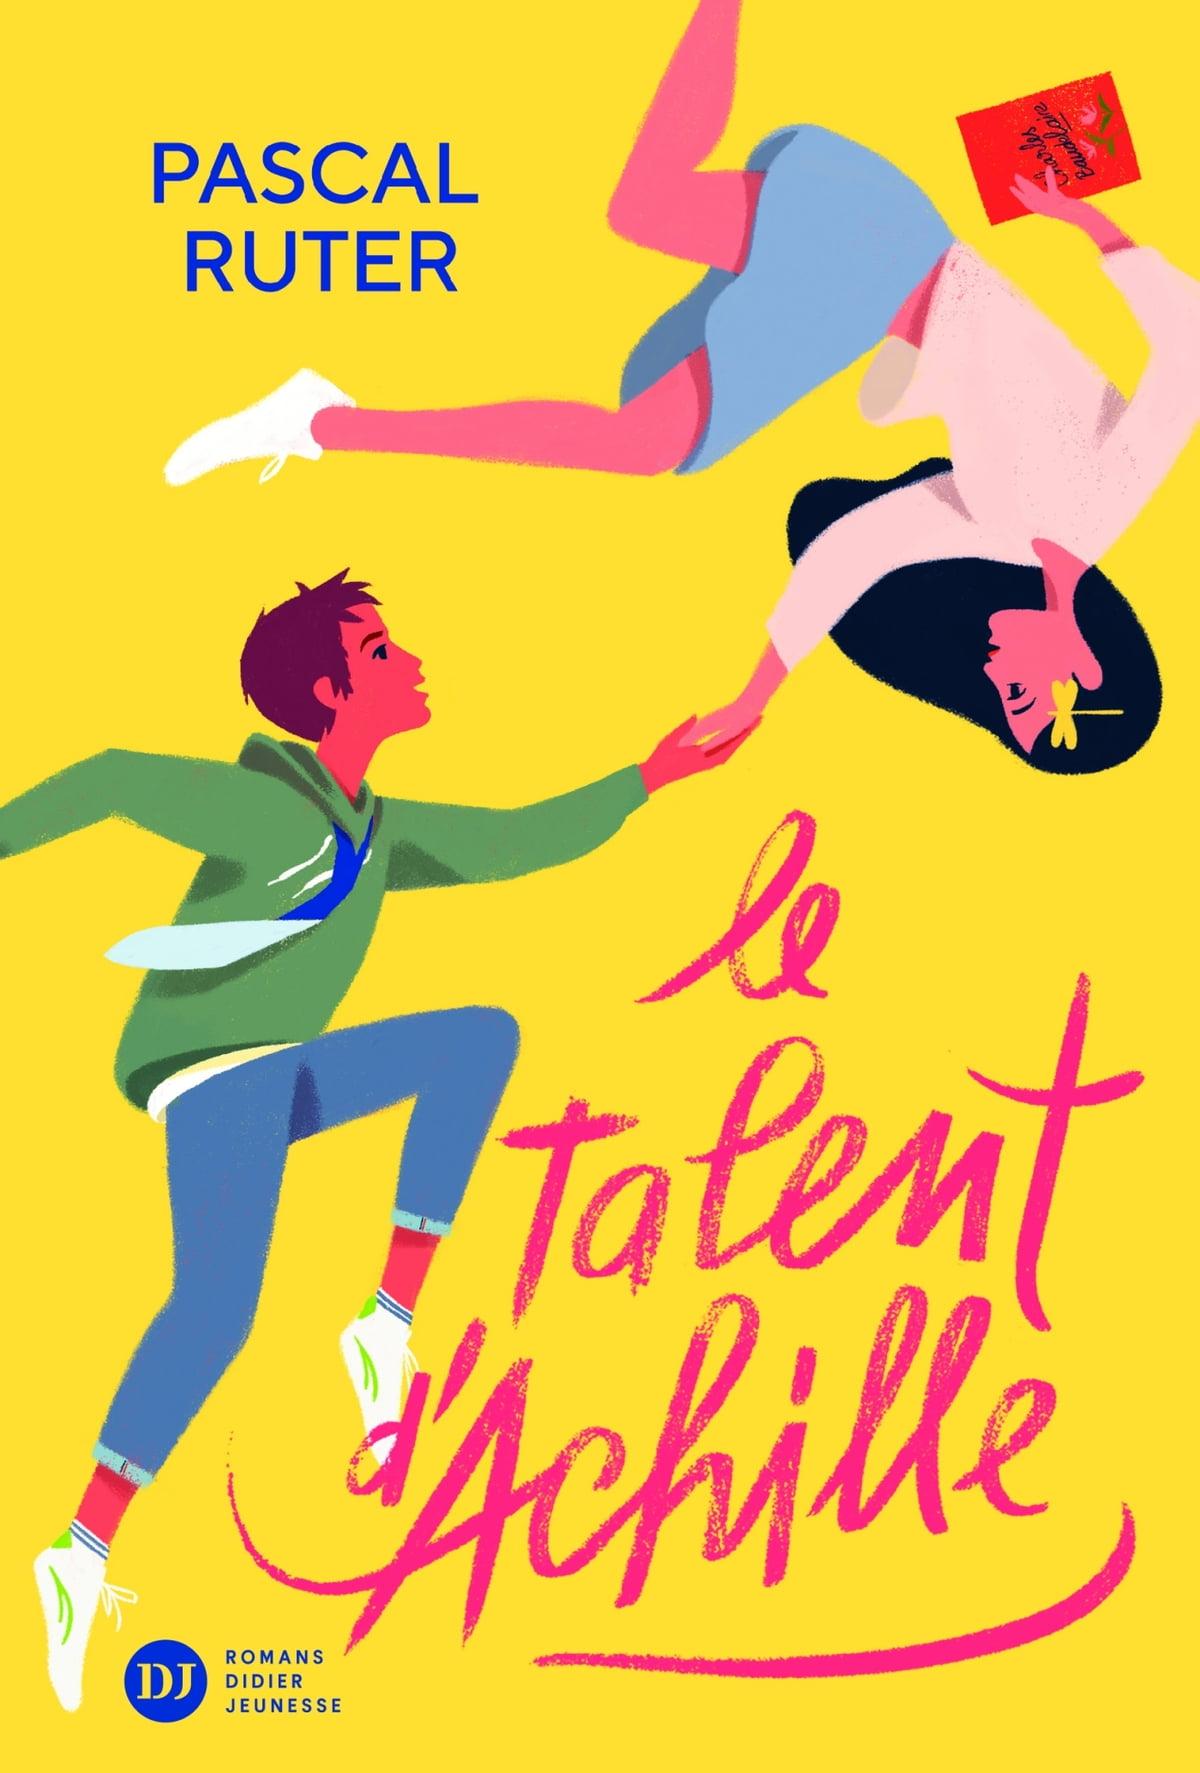 "Le talent d'Achille", un roman de Pascal Ruter en lice pour le Prix RTS Littérature Ados 2023. [Romans Didier Jeunesse - Sébastien Pelon]